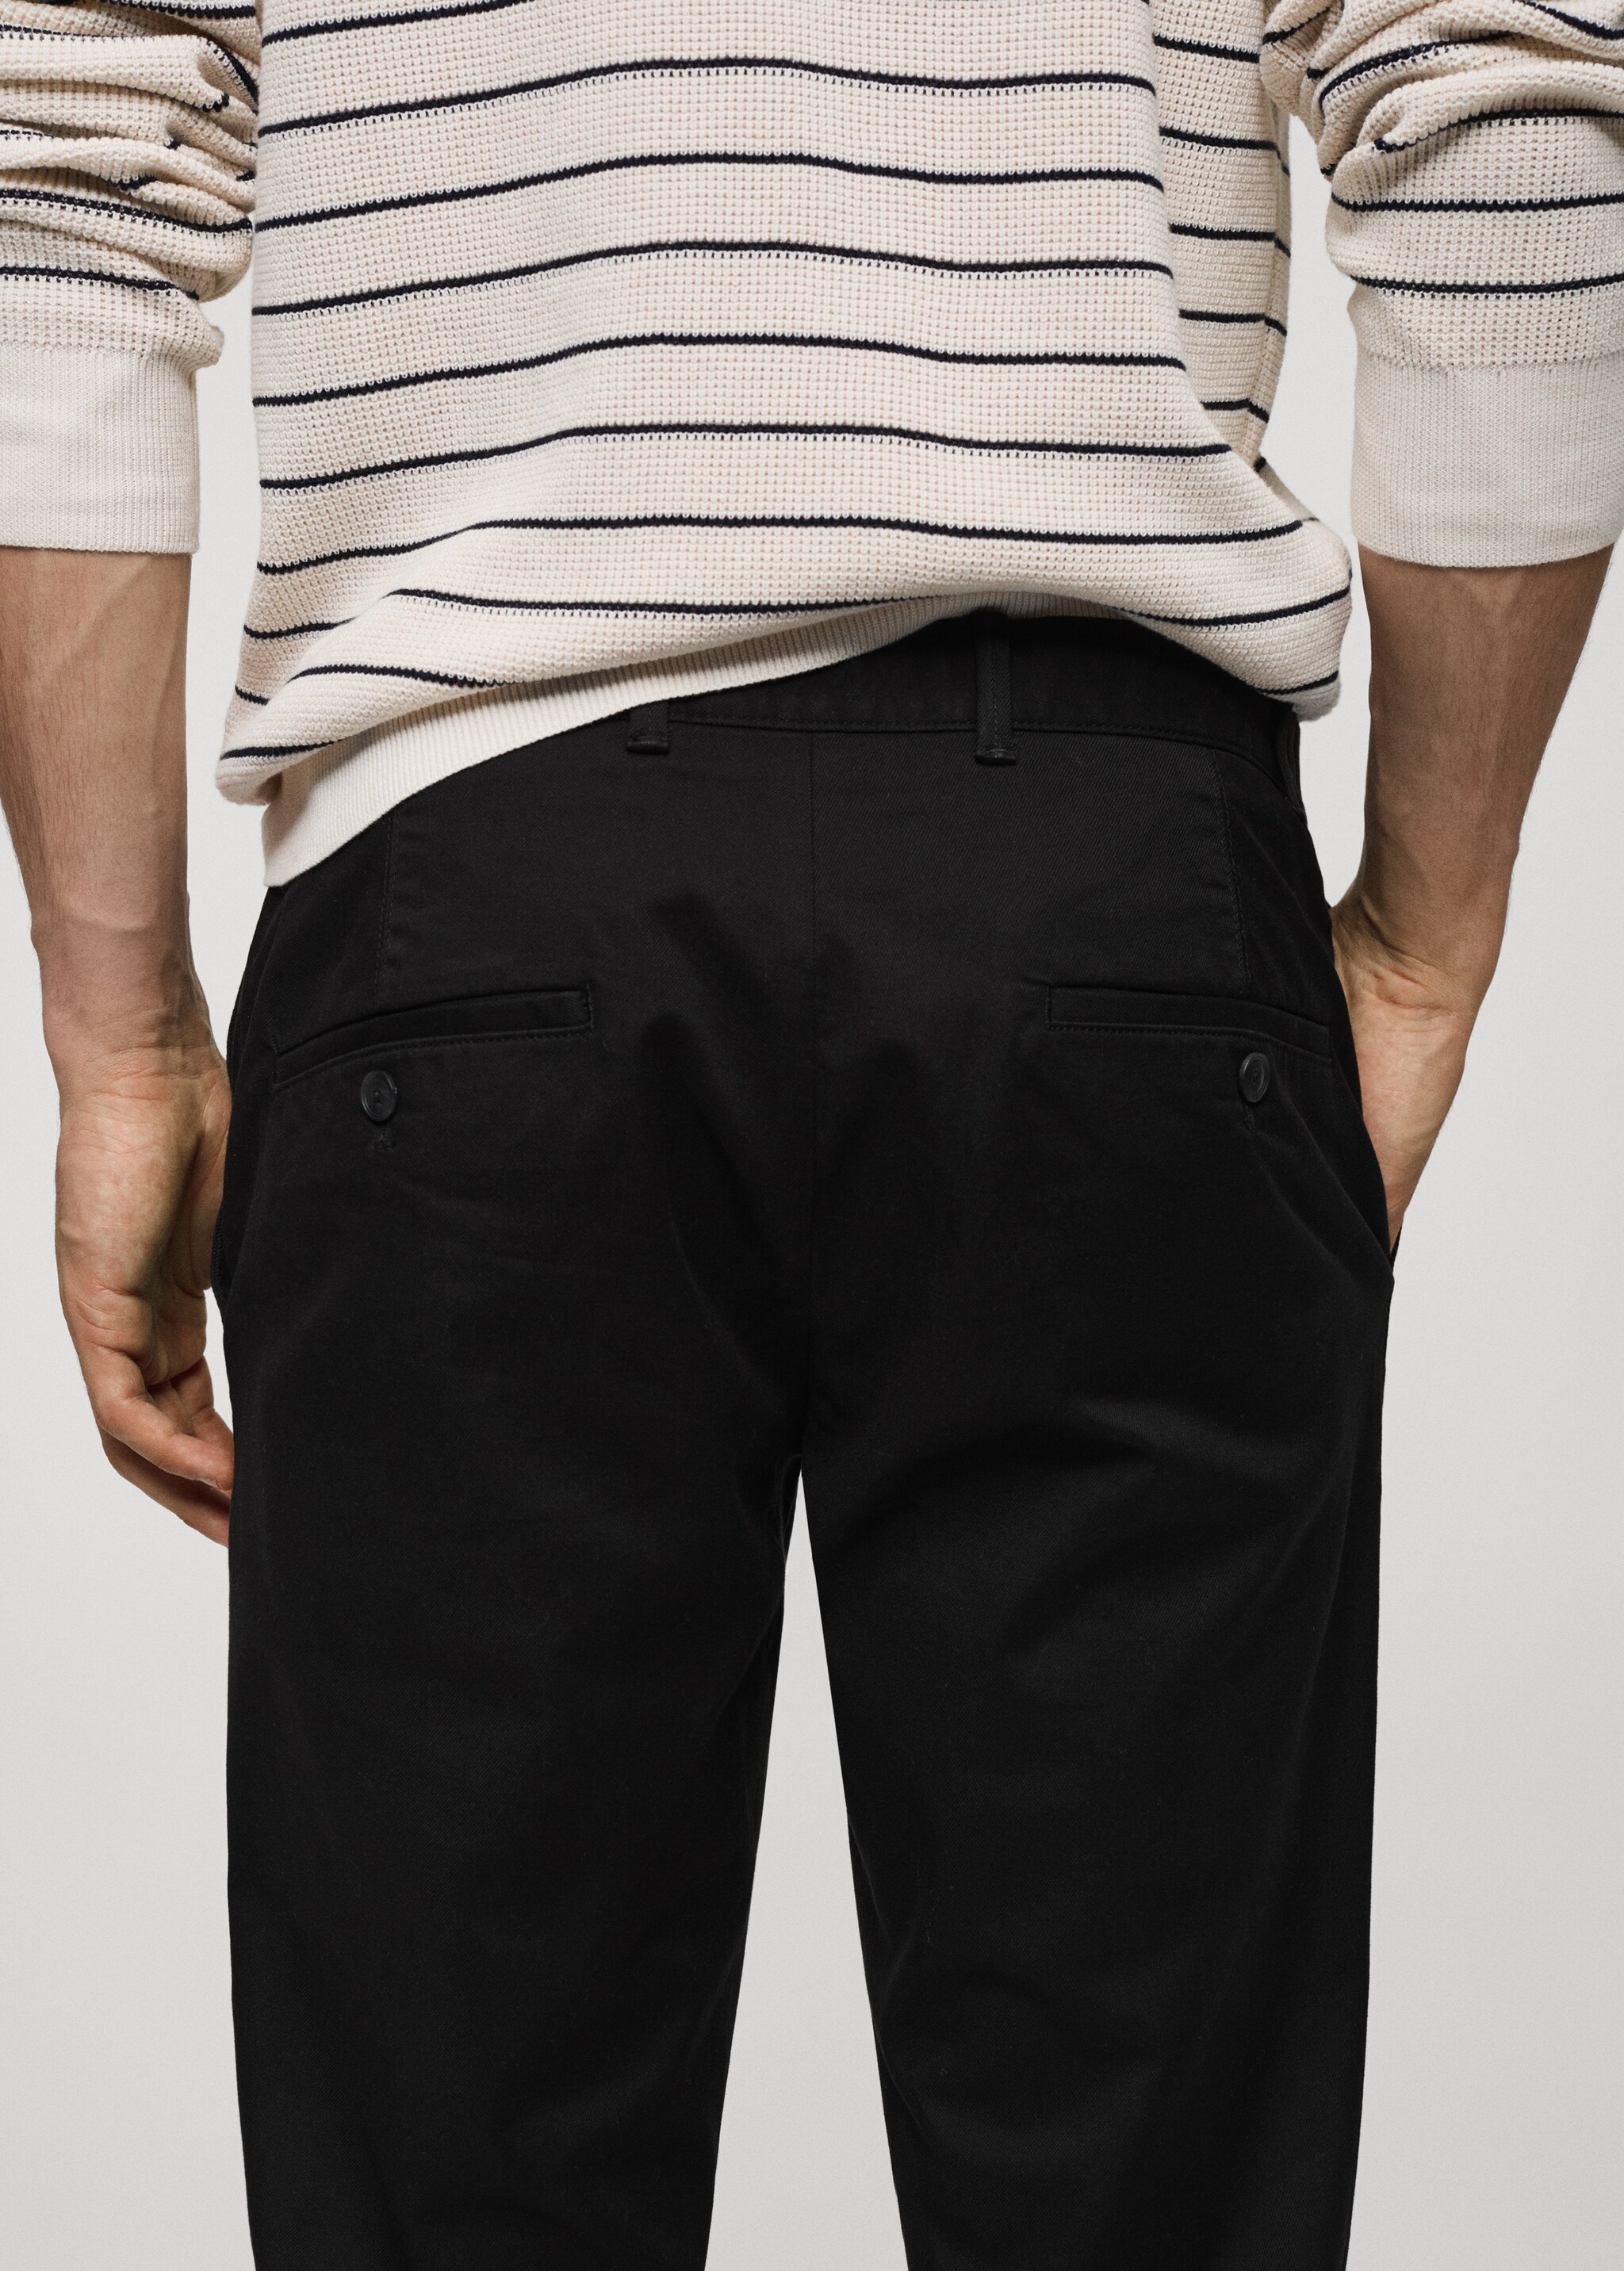 Pantalón chino slim fit sarga - Detalle del artículo 4